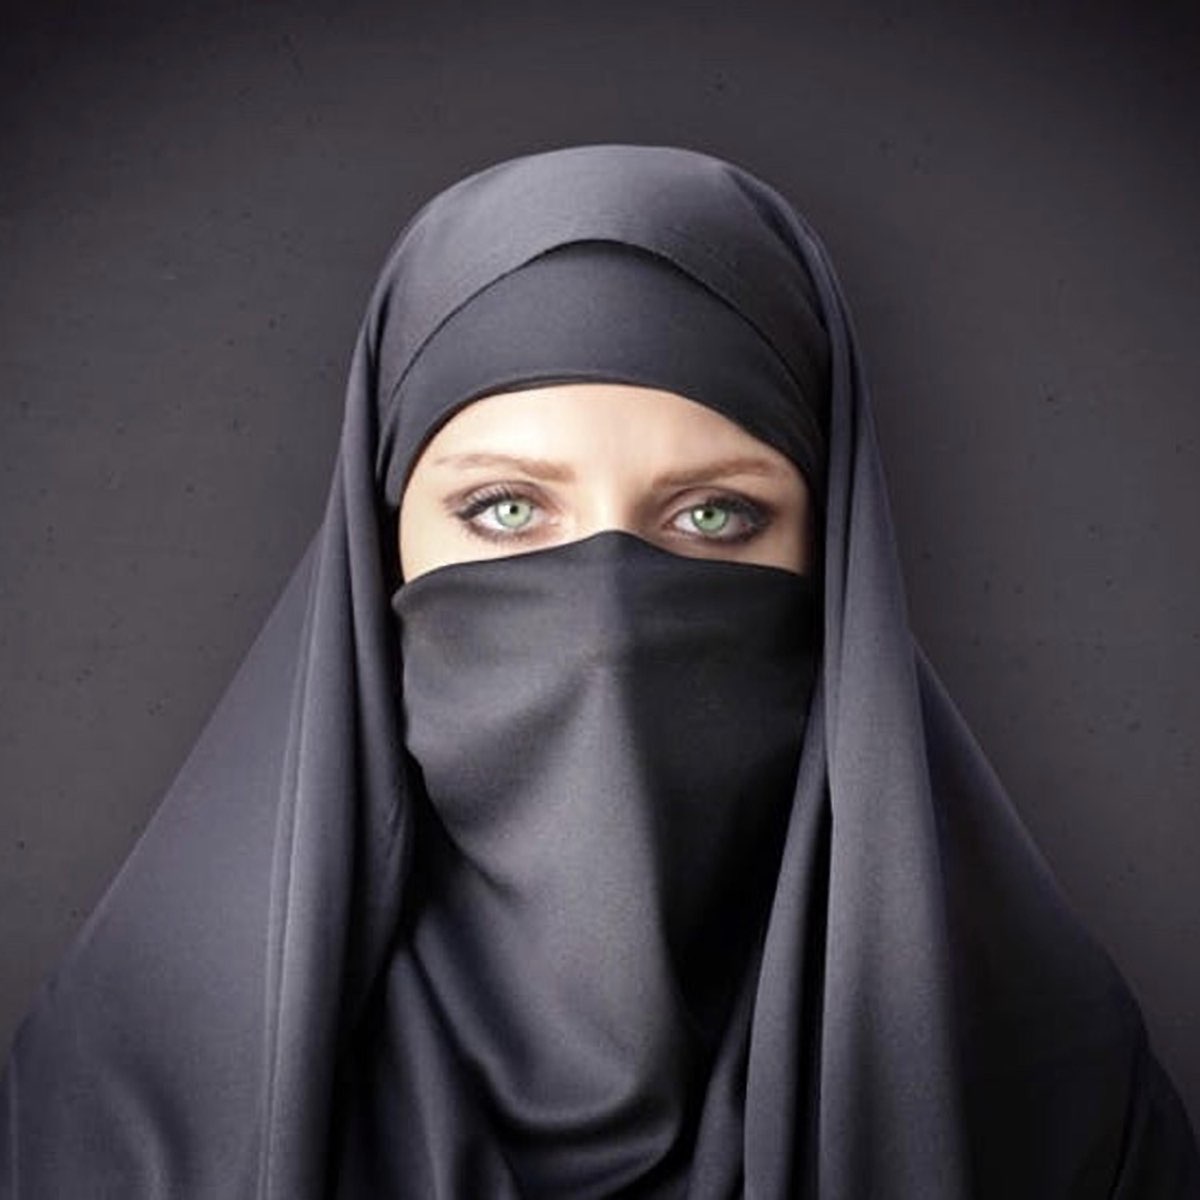 Паранджа 6. Никаб хиджаб бурка. Хиджаб никаб чадра паранджа бурка. Мусульманские женщины. Женщина в хиджабе.